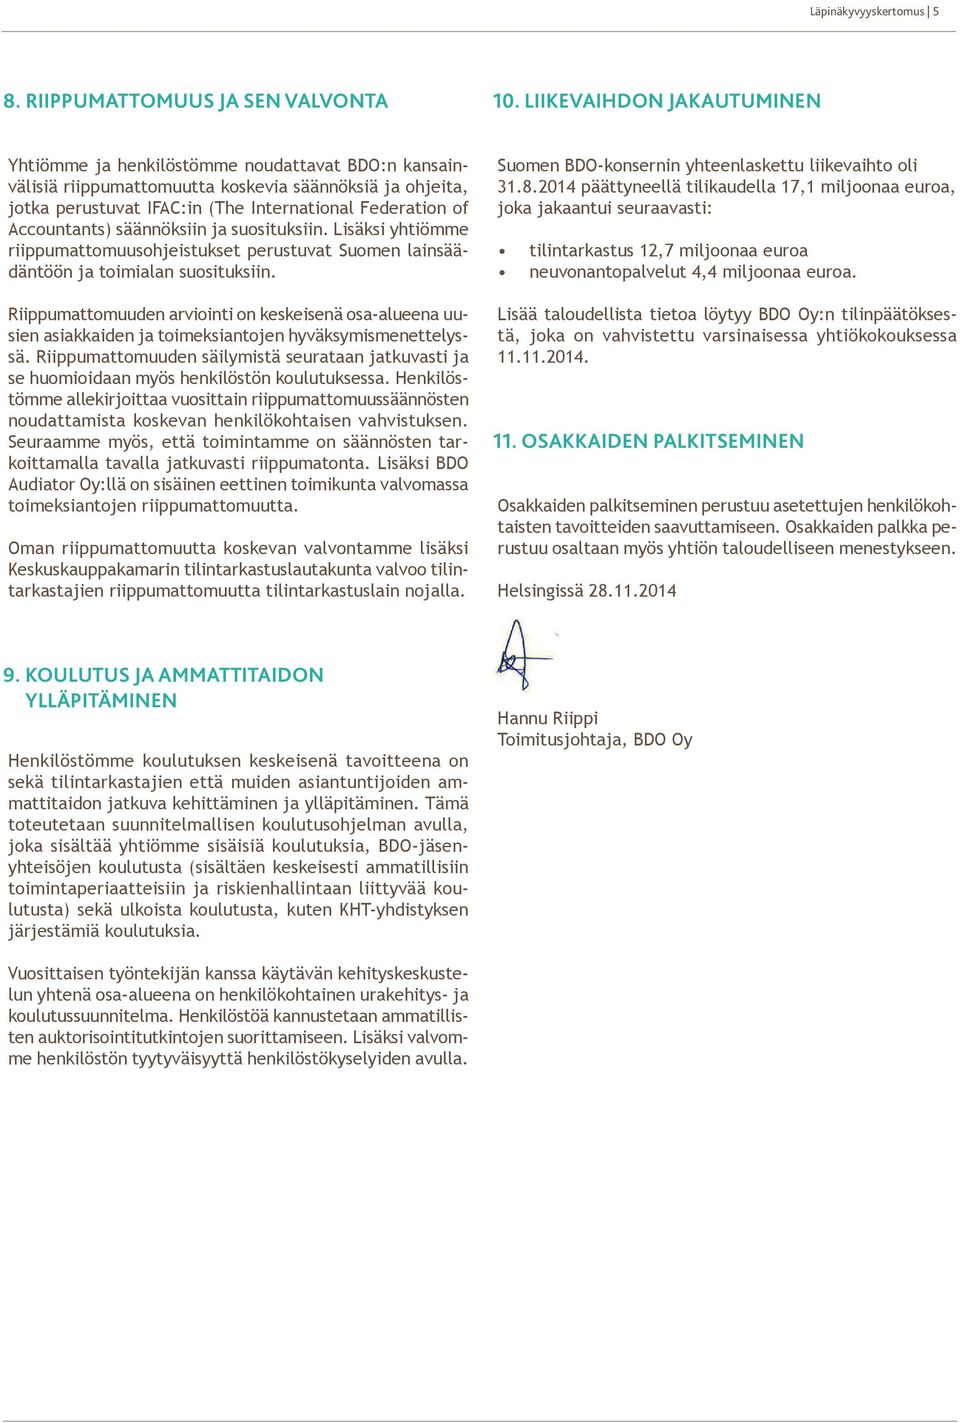 Accountants) säännöksiin ja suosituksiin. Lisäksi yhtiömme riippumattomuusohjeistukset perustuvat Suomen lainsäädäntöön ja toimialan suosituksiin.